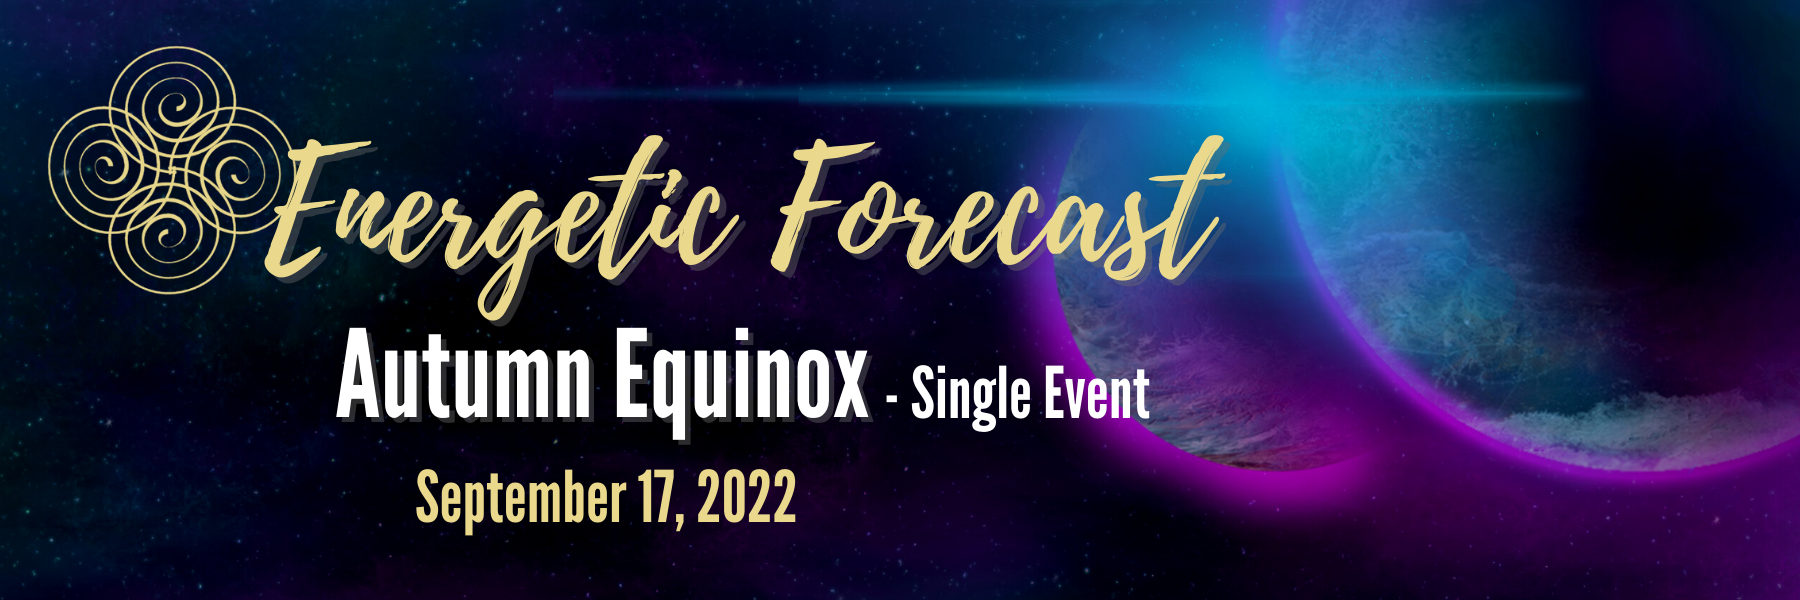 Energetic Forecast – Autumn Equinox 2022 – Single Event